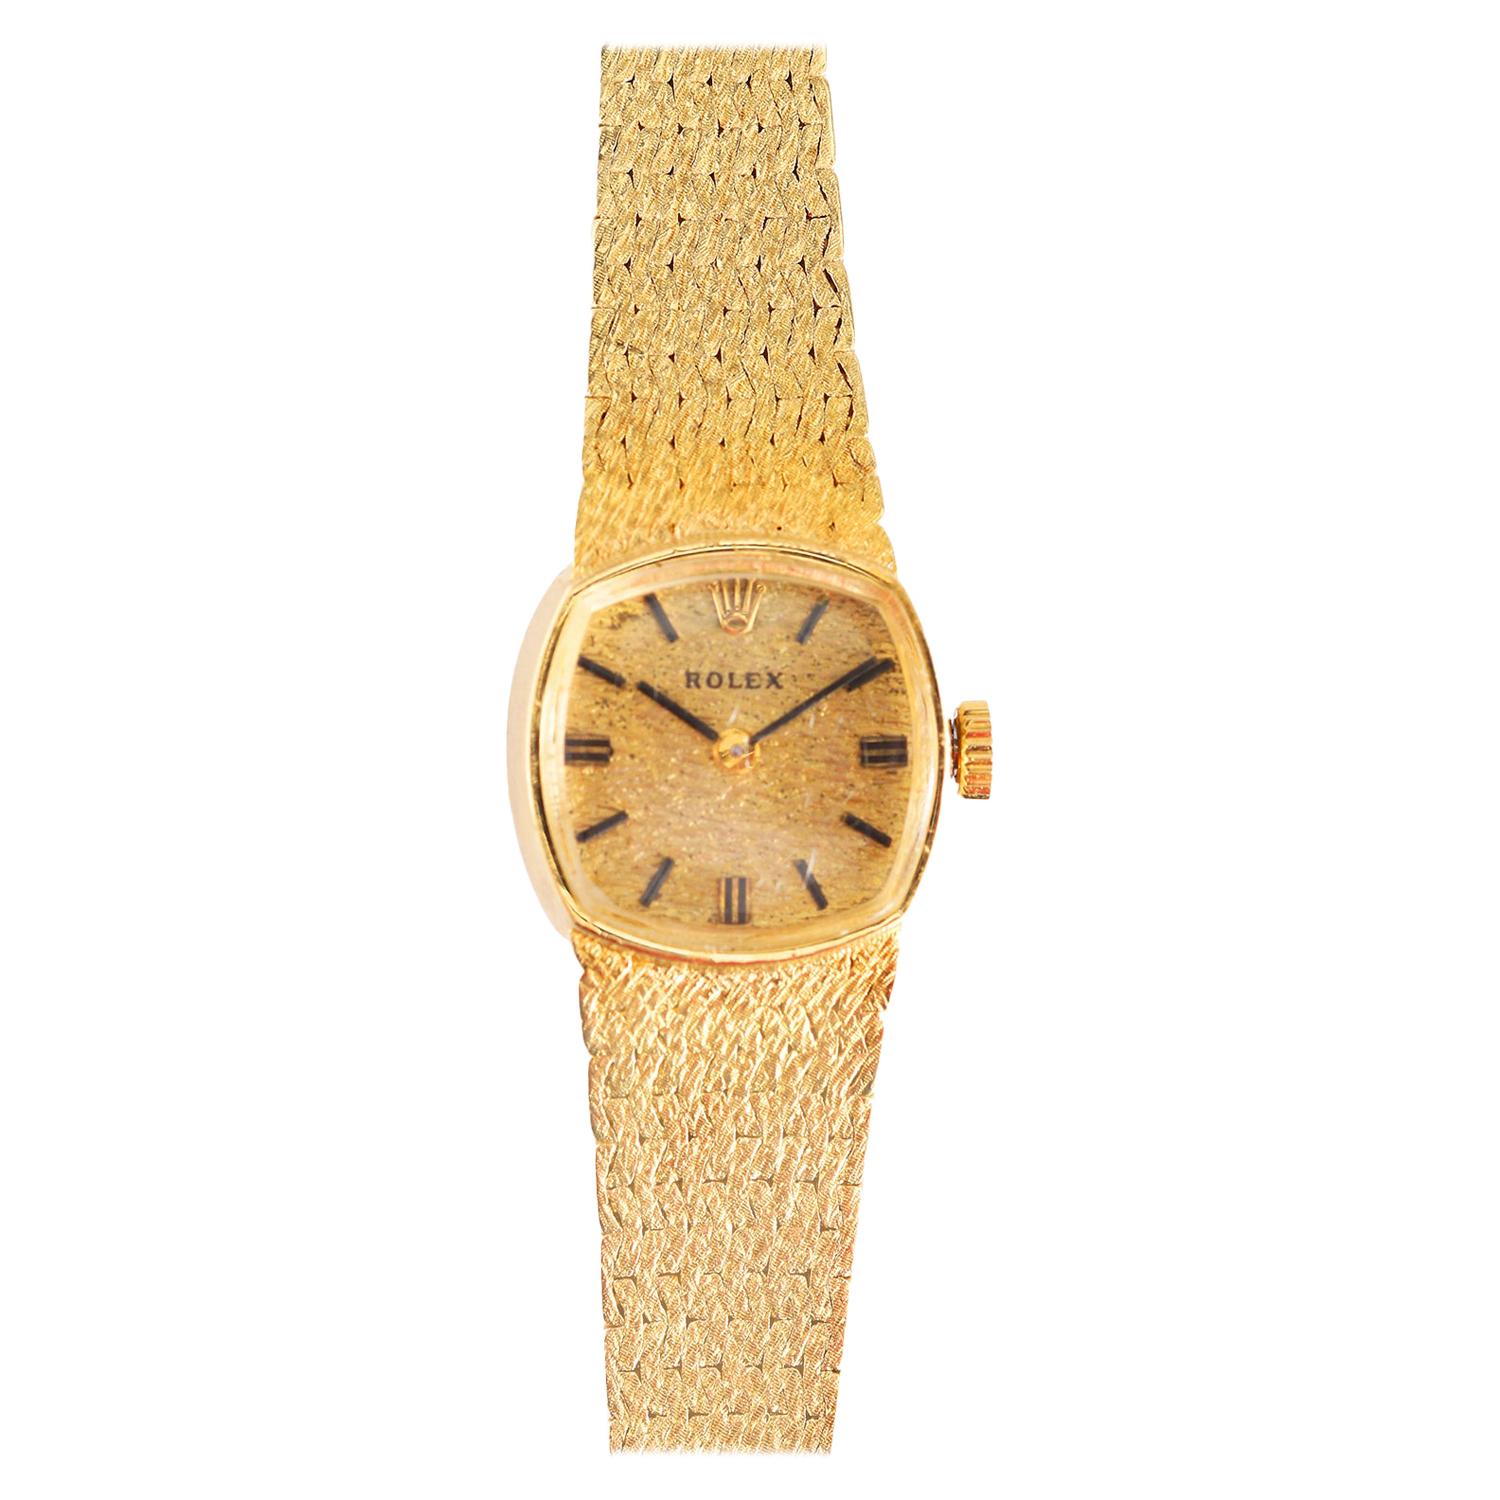 Vintage Rolex 14k Yellow Gold Rolex Watch Ref. 8214